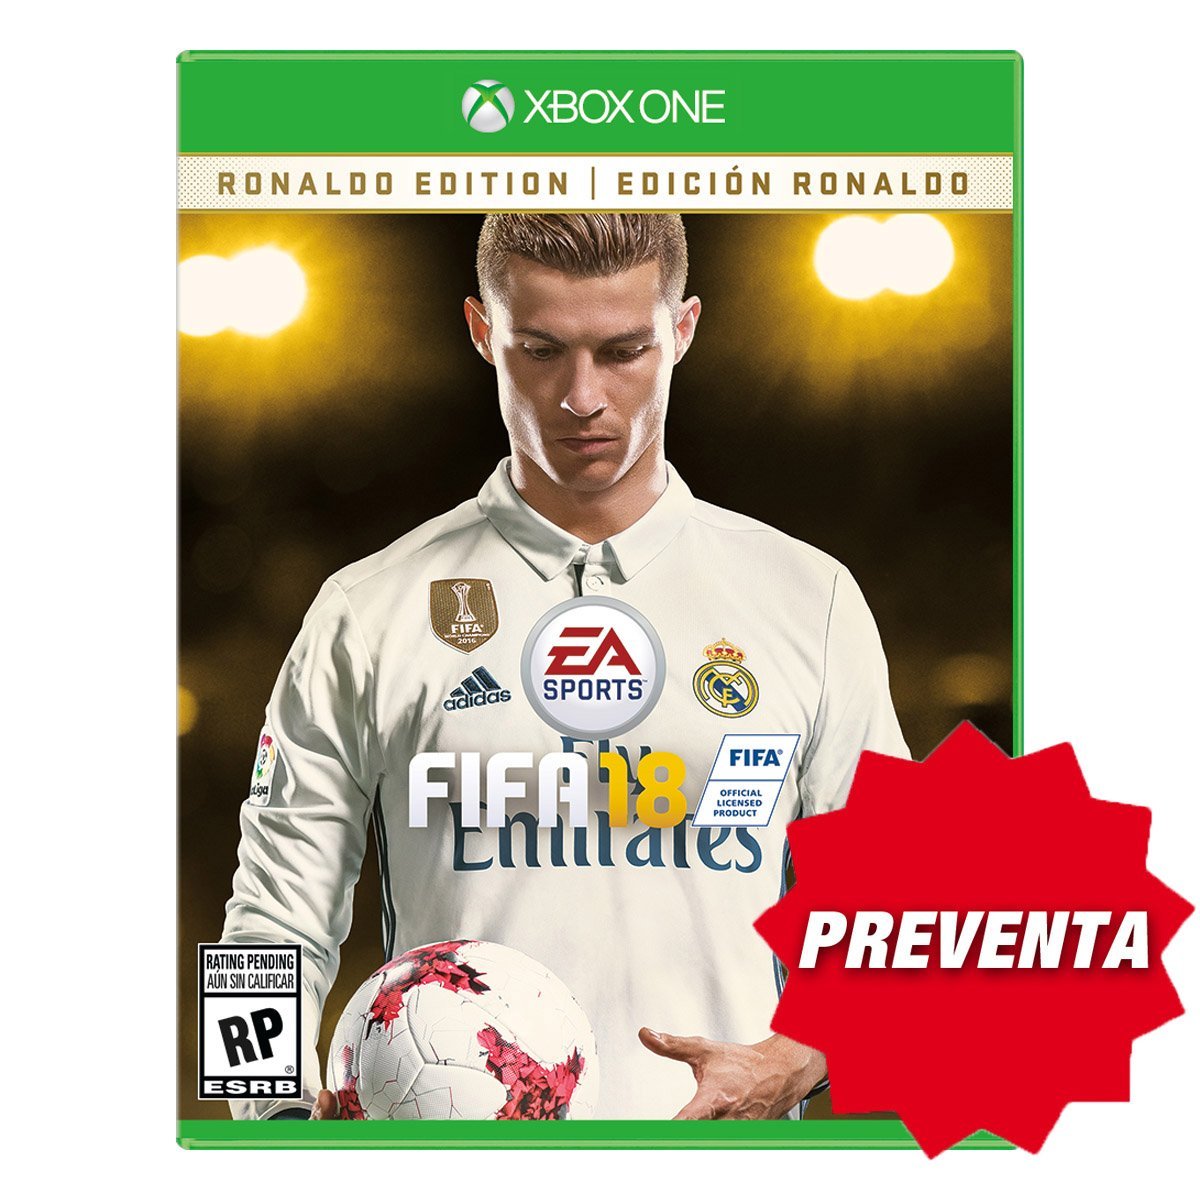 Preventa: Xbox One Fifa 18 Ronaldo Edition